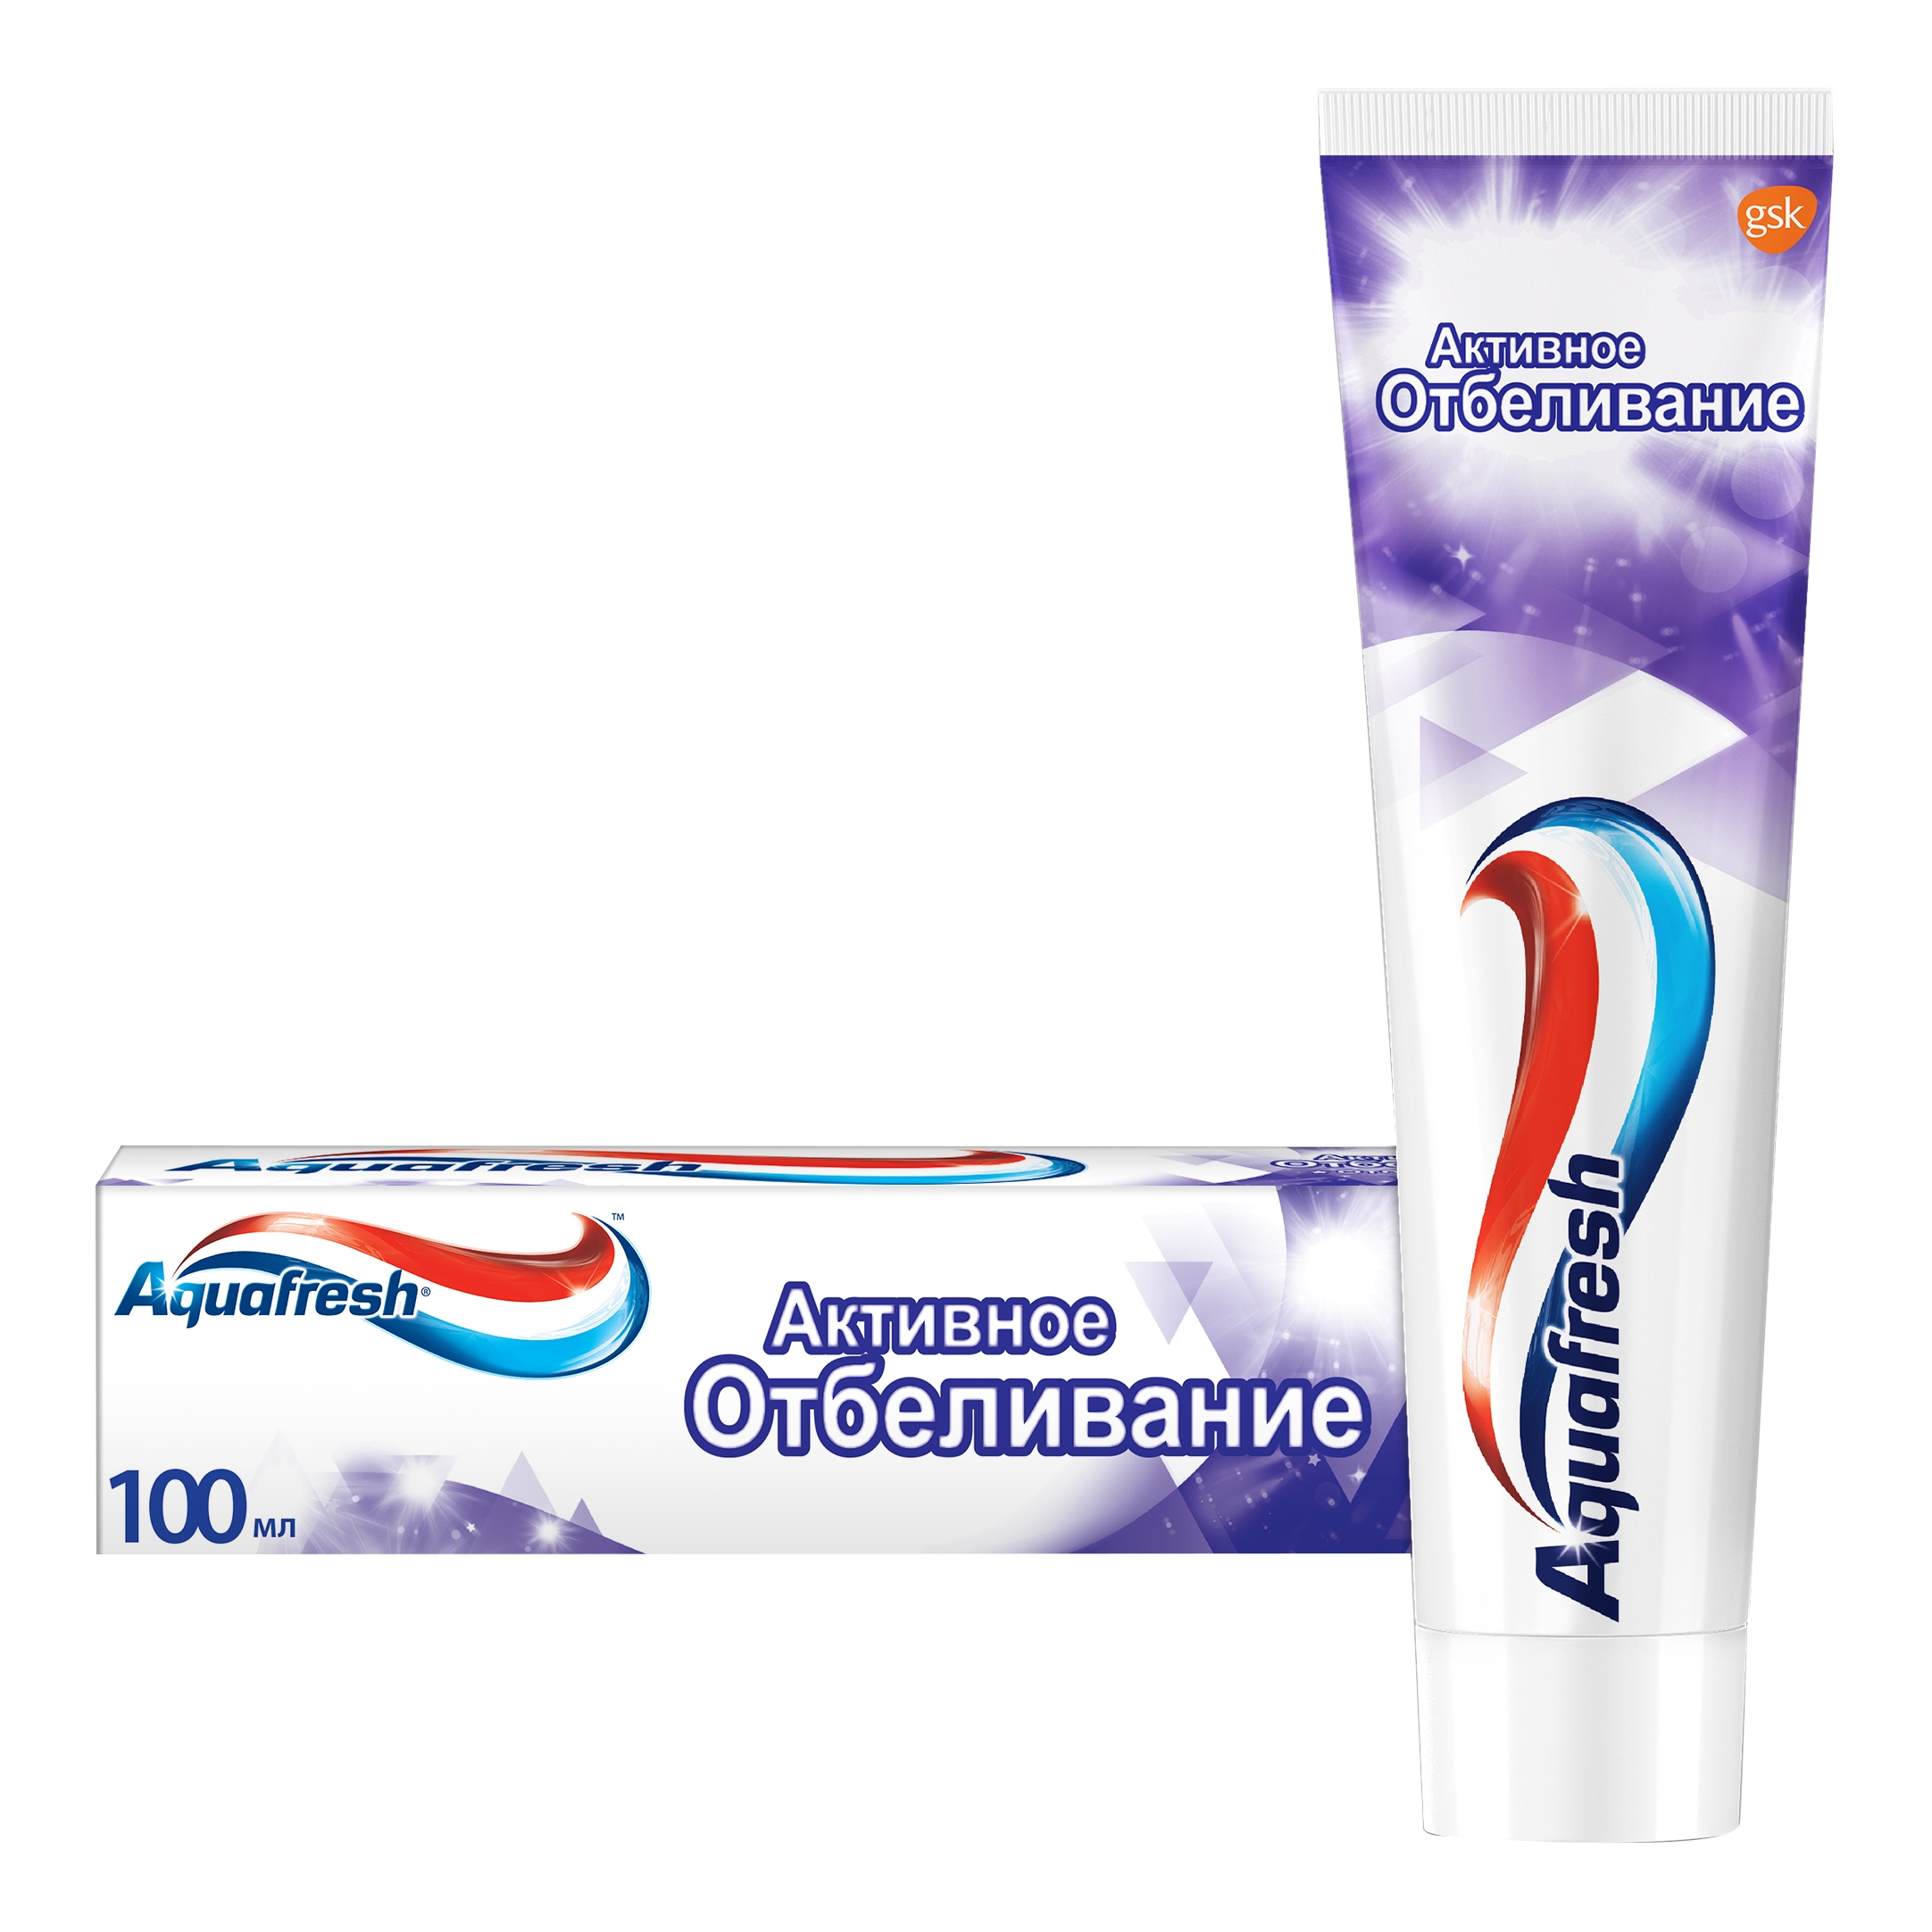 Зубная паста Aquafresh Активное отбеливание 100 мл зубная паста aquafresh активное отбеливание отбеливающая с фтором для защиты от кариеса 100 мл